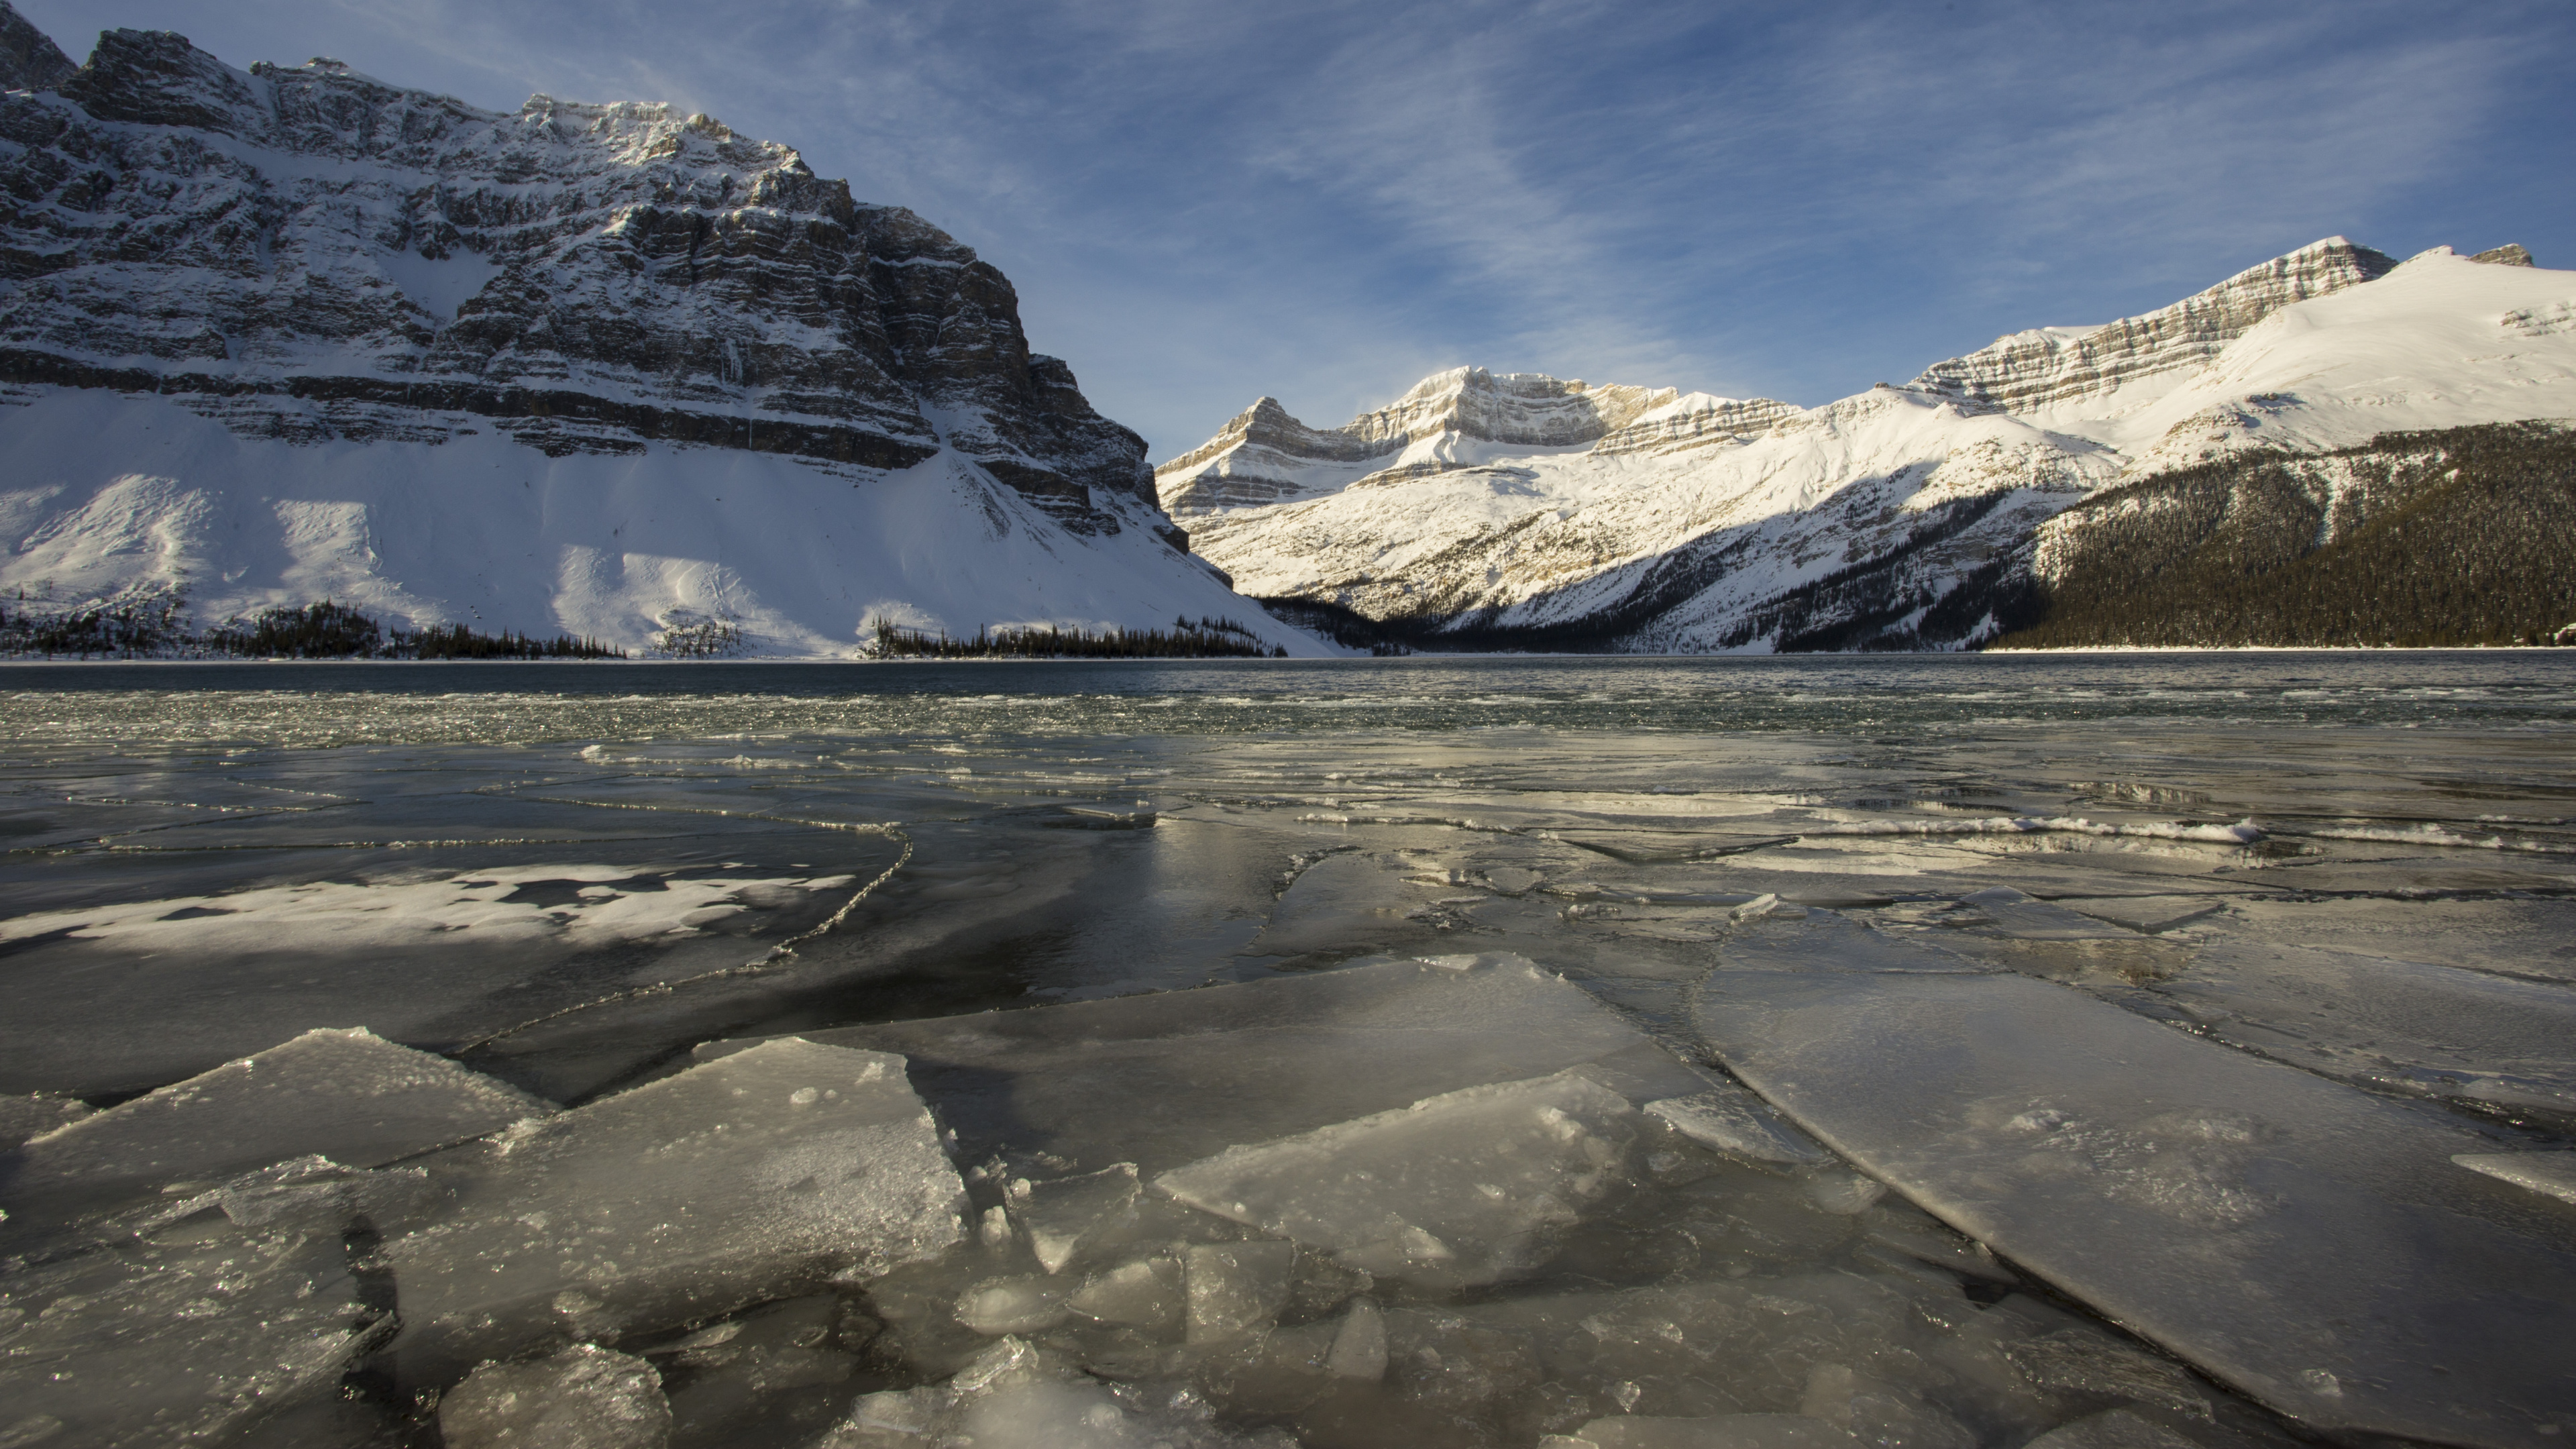 弓湖, 冰川湖, 冰川地貌, 北极, 冰川 壁纸 3840x2160 允许